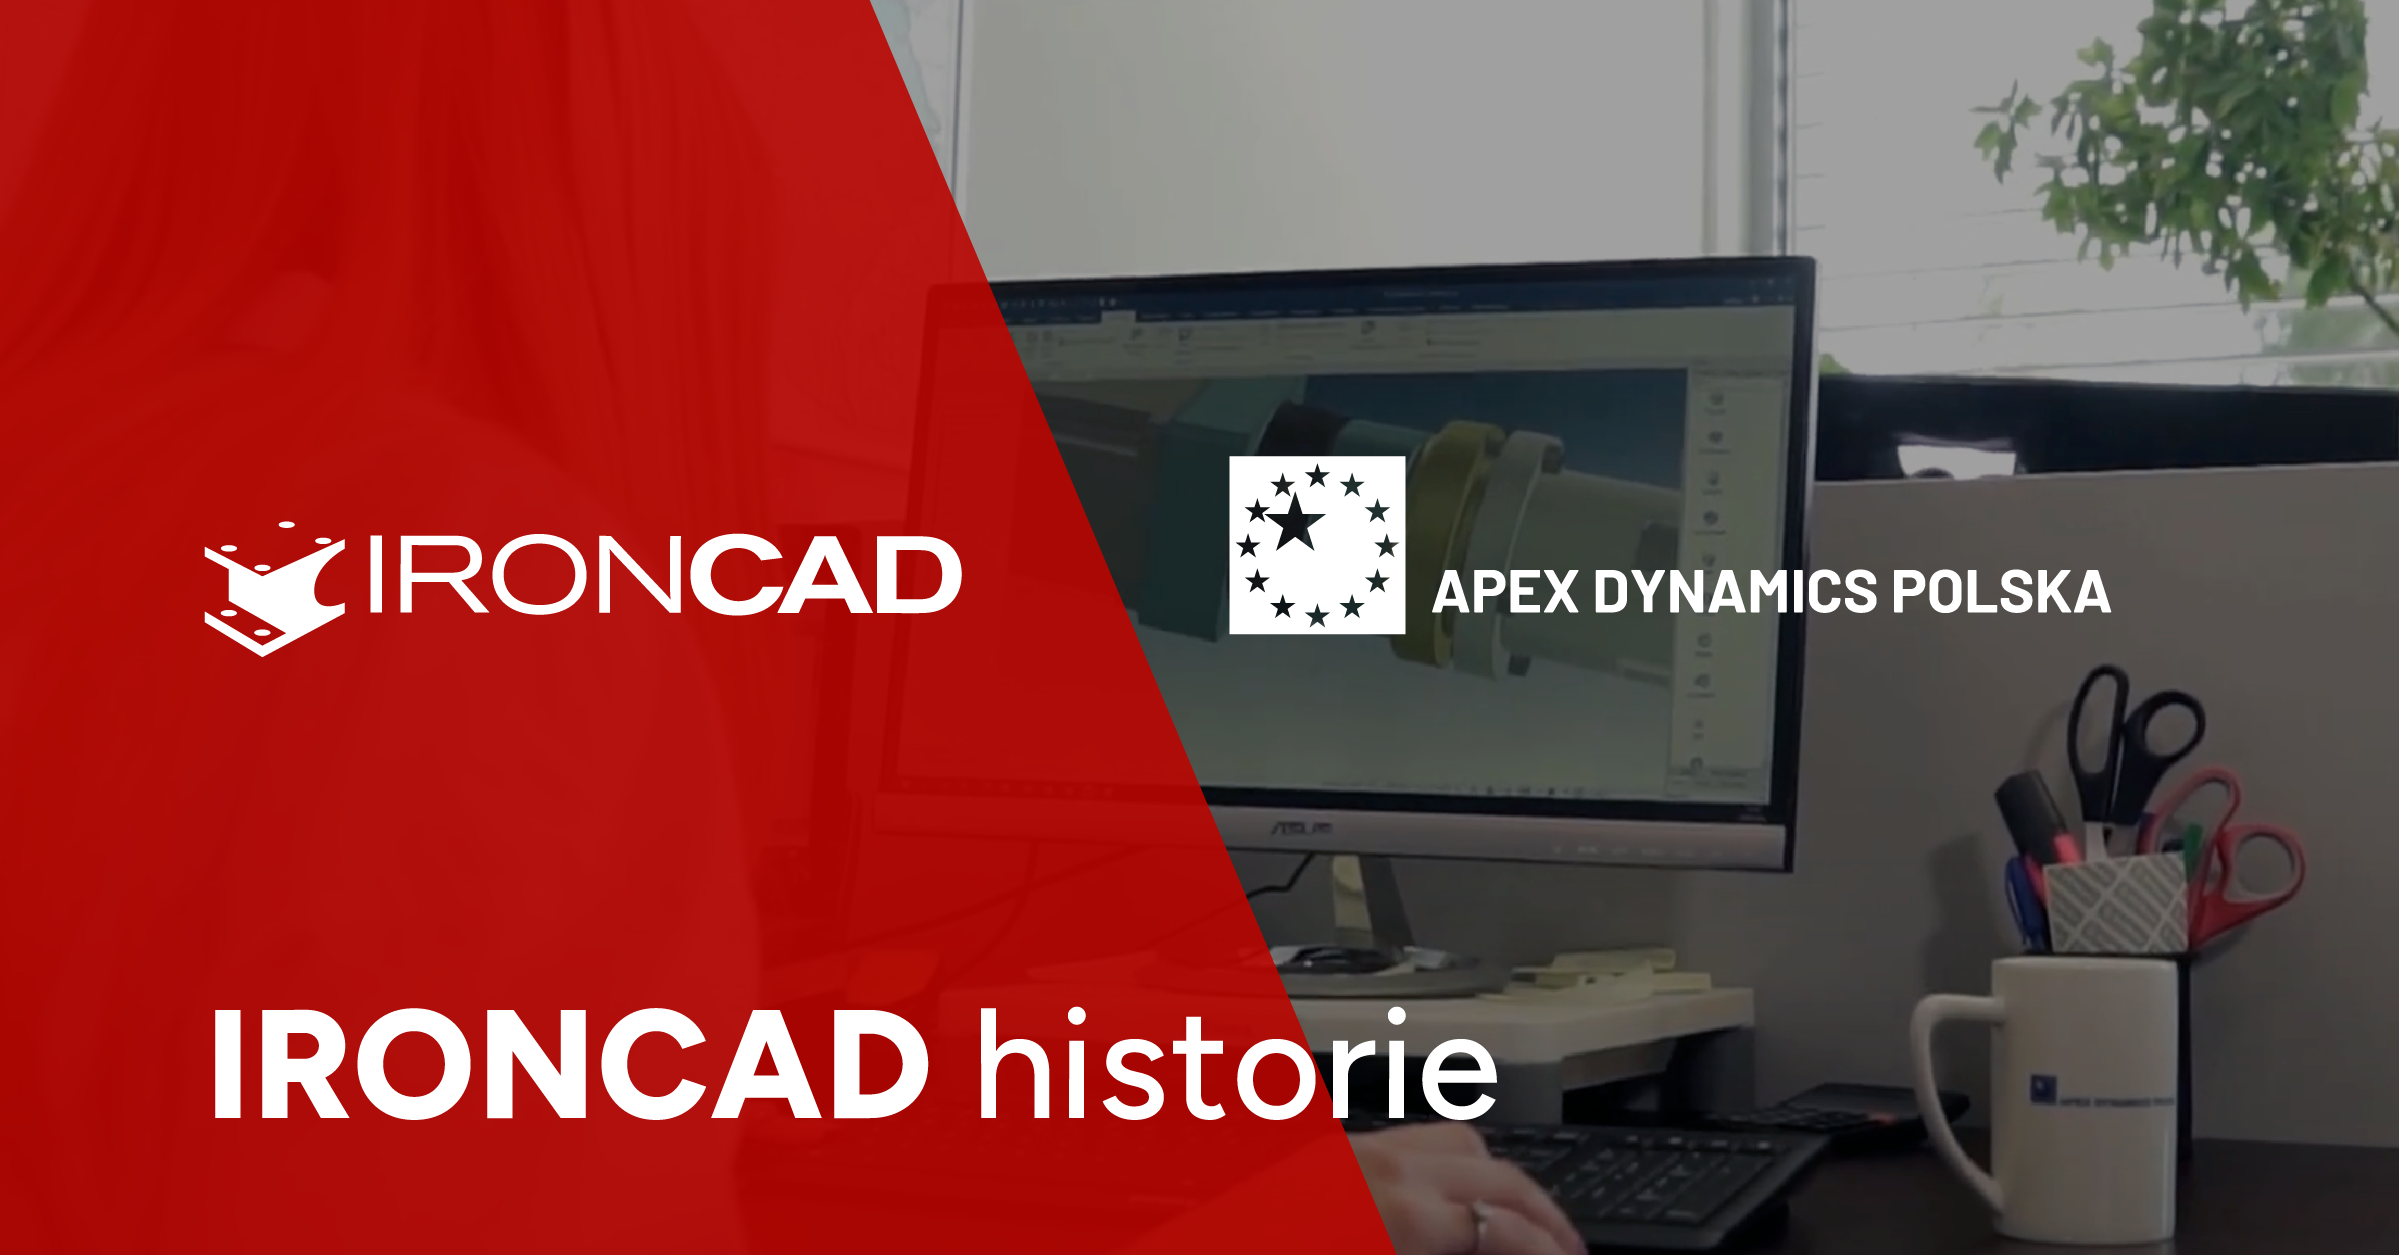 IRONCAD historie. Z wizytą w firmie APEX Dynamics